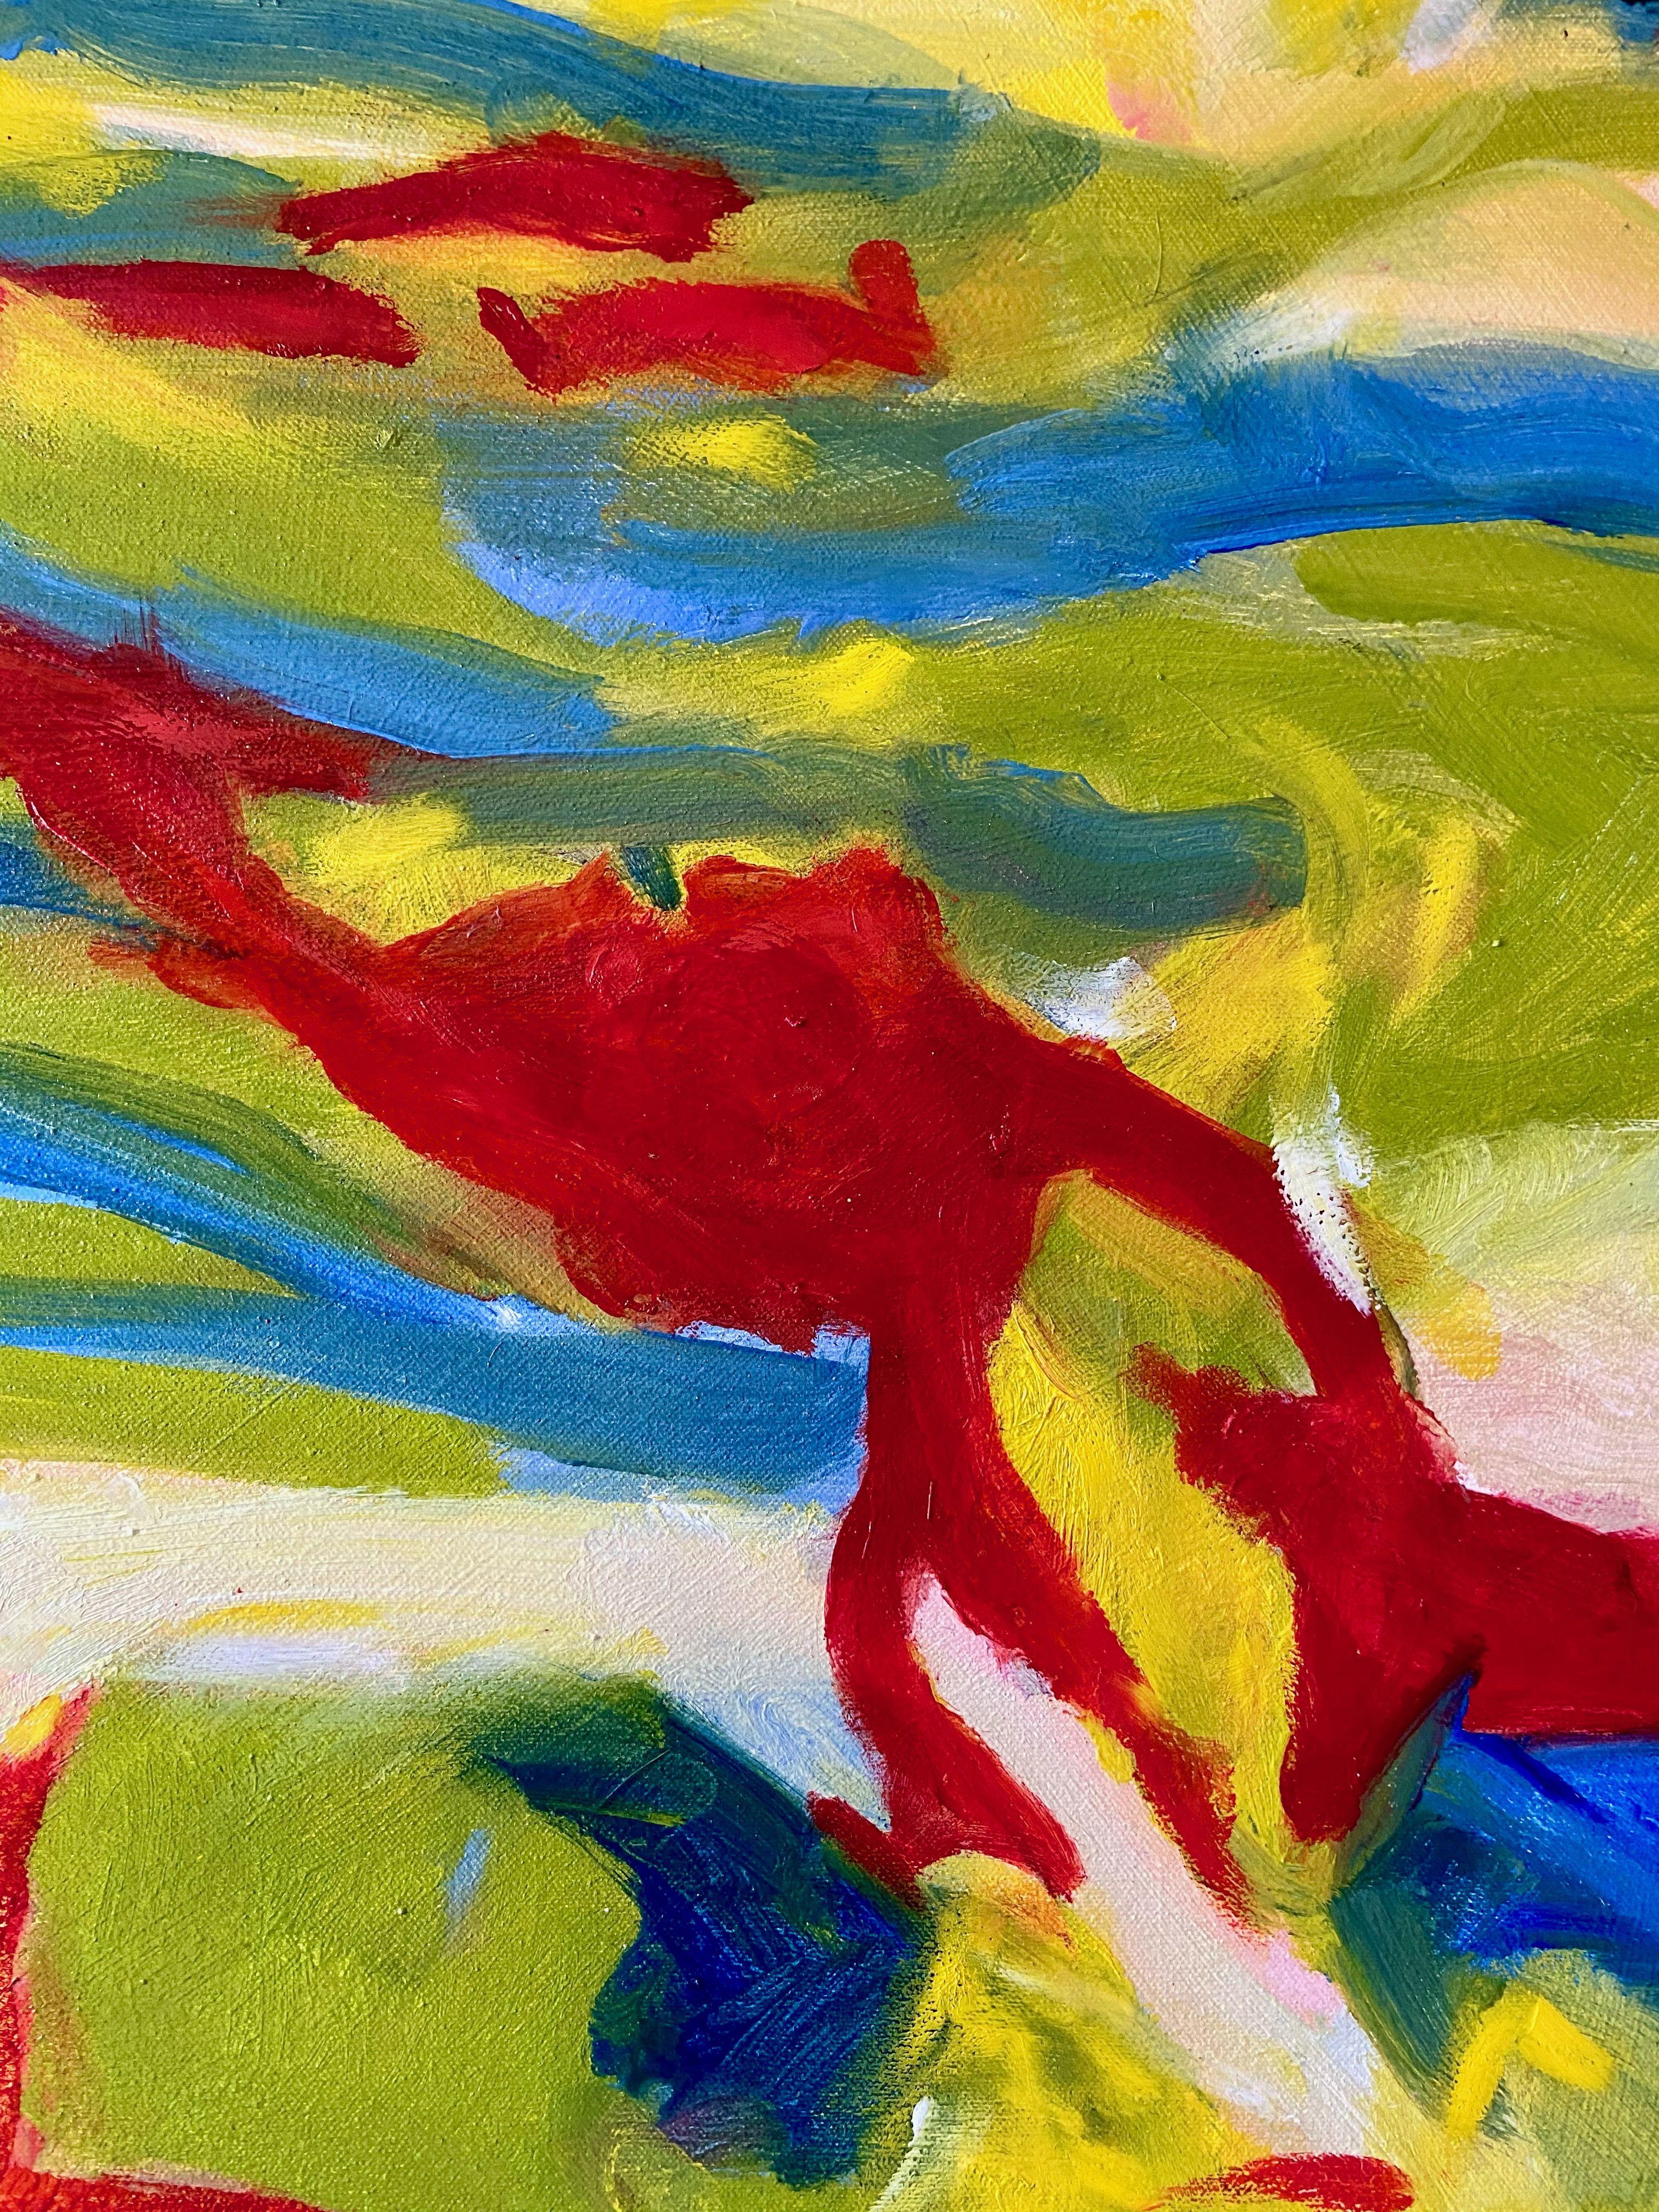 Merveillement III, Peinture, Huile sur Toile - Abstrait Painting par Steven Miller